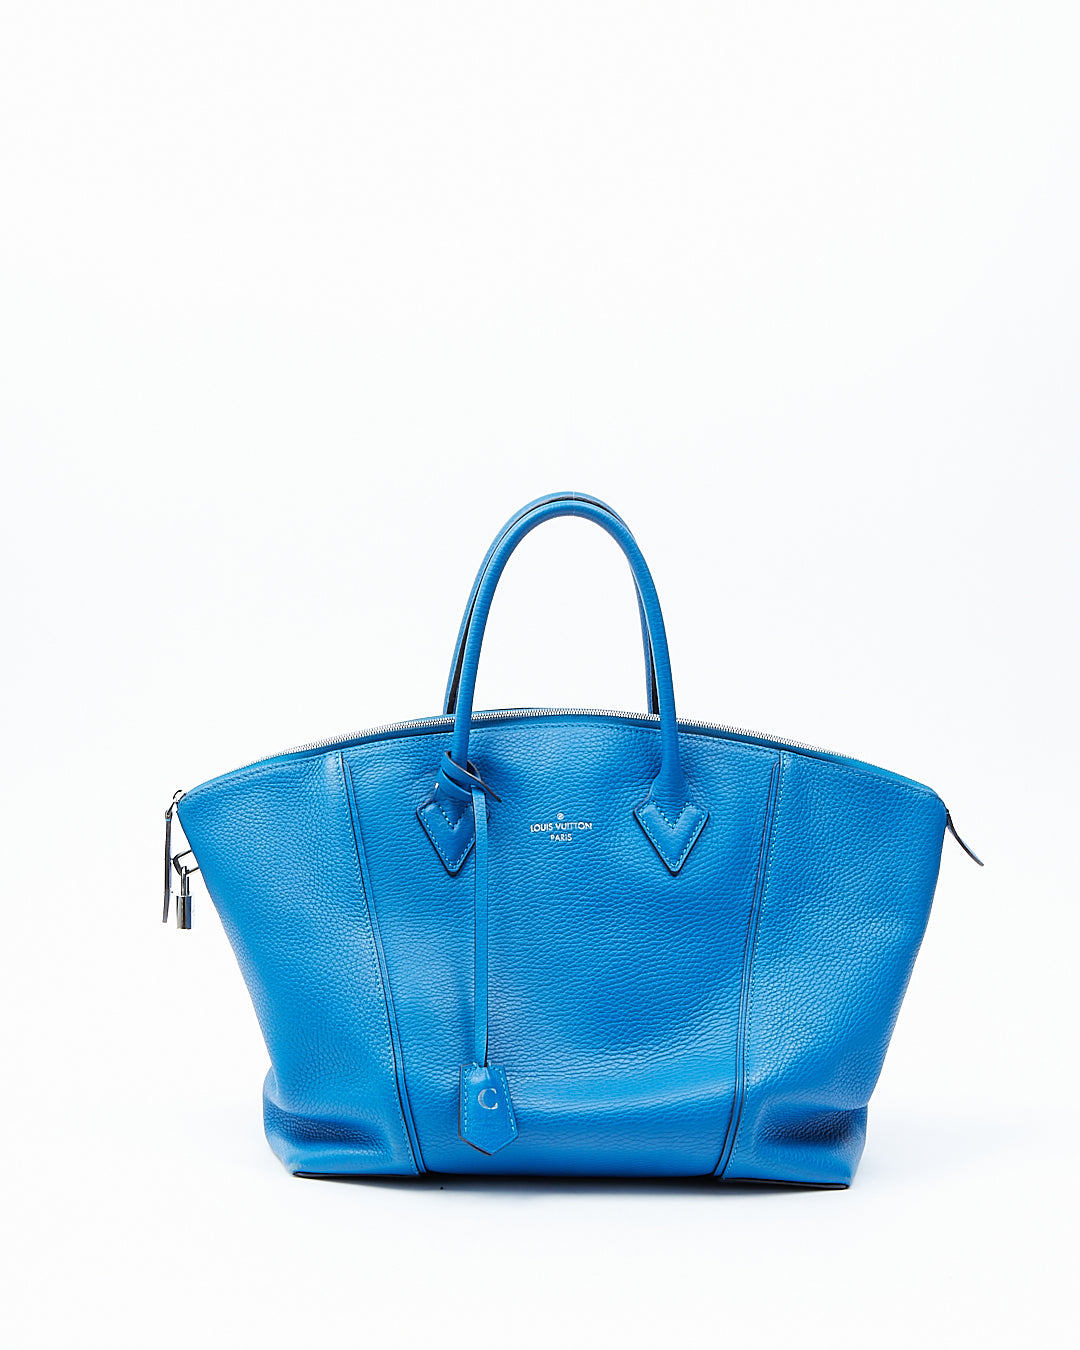 Sac Louis Vuitton Soft Lockit MM en cuir Taurillon bleu royal